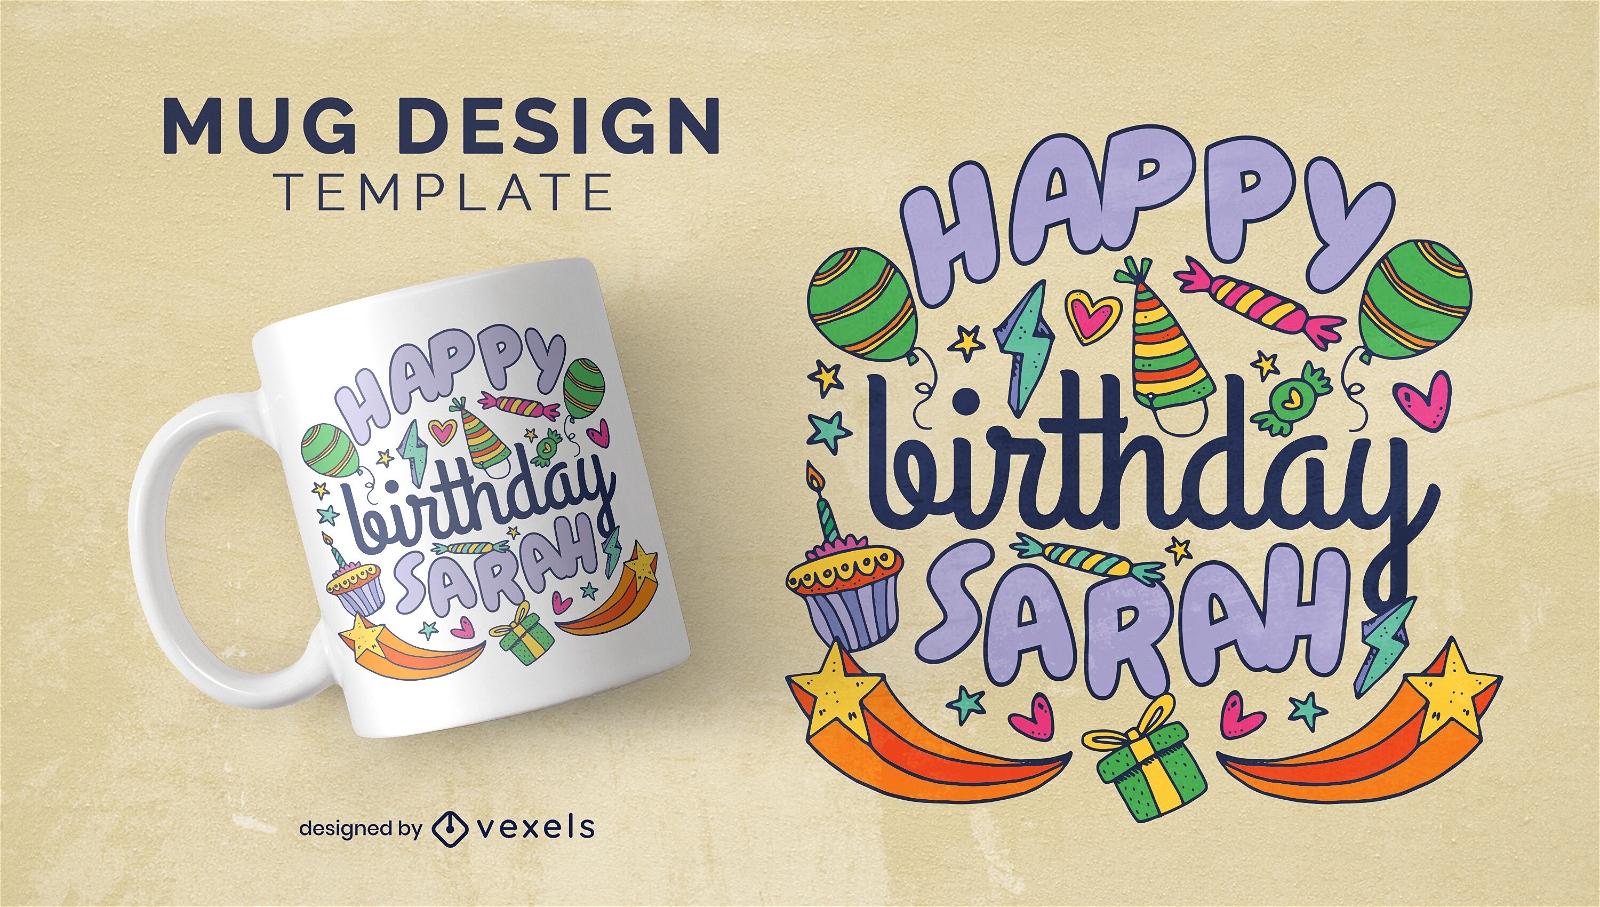 Happy birthday celebration mug design